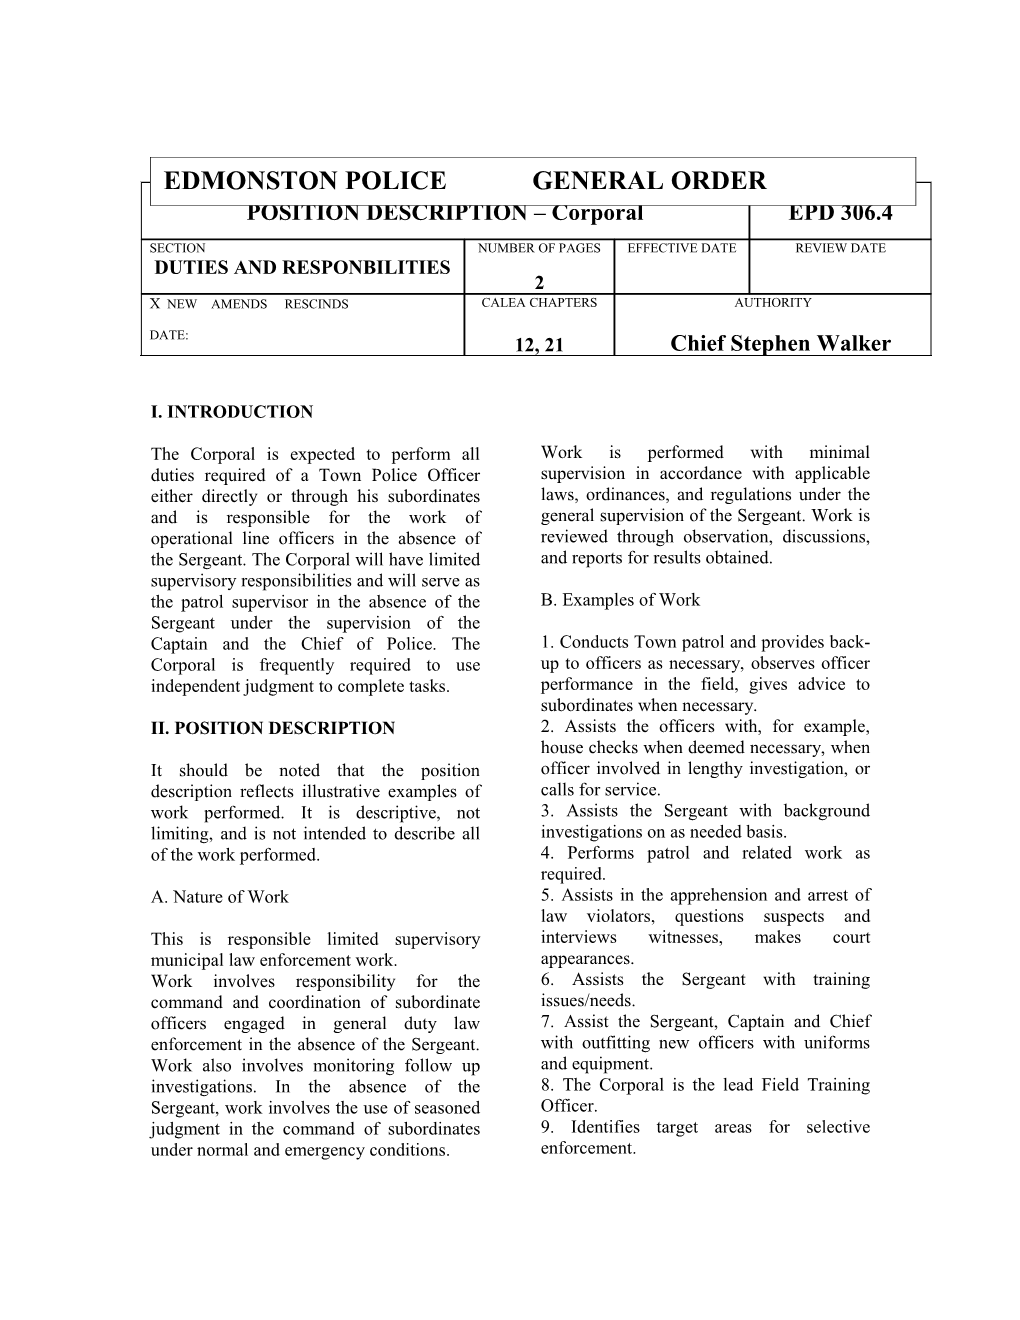 Position Description-Corporal Epd306.4